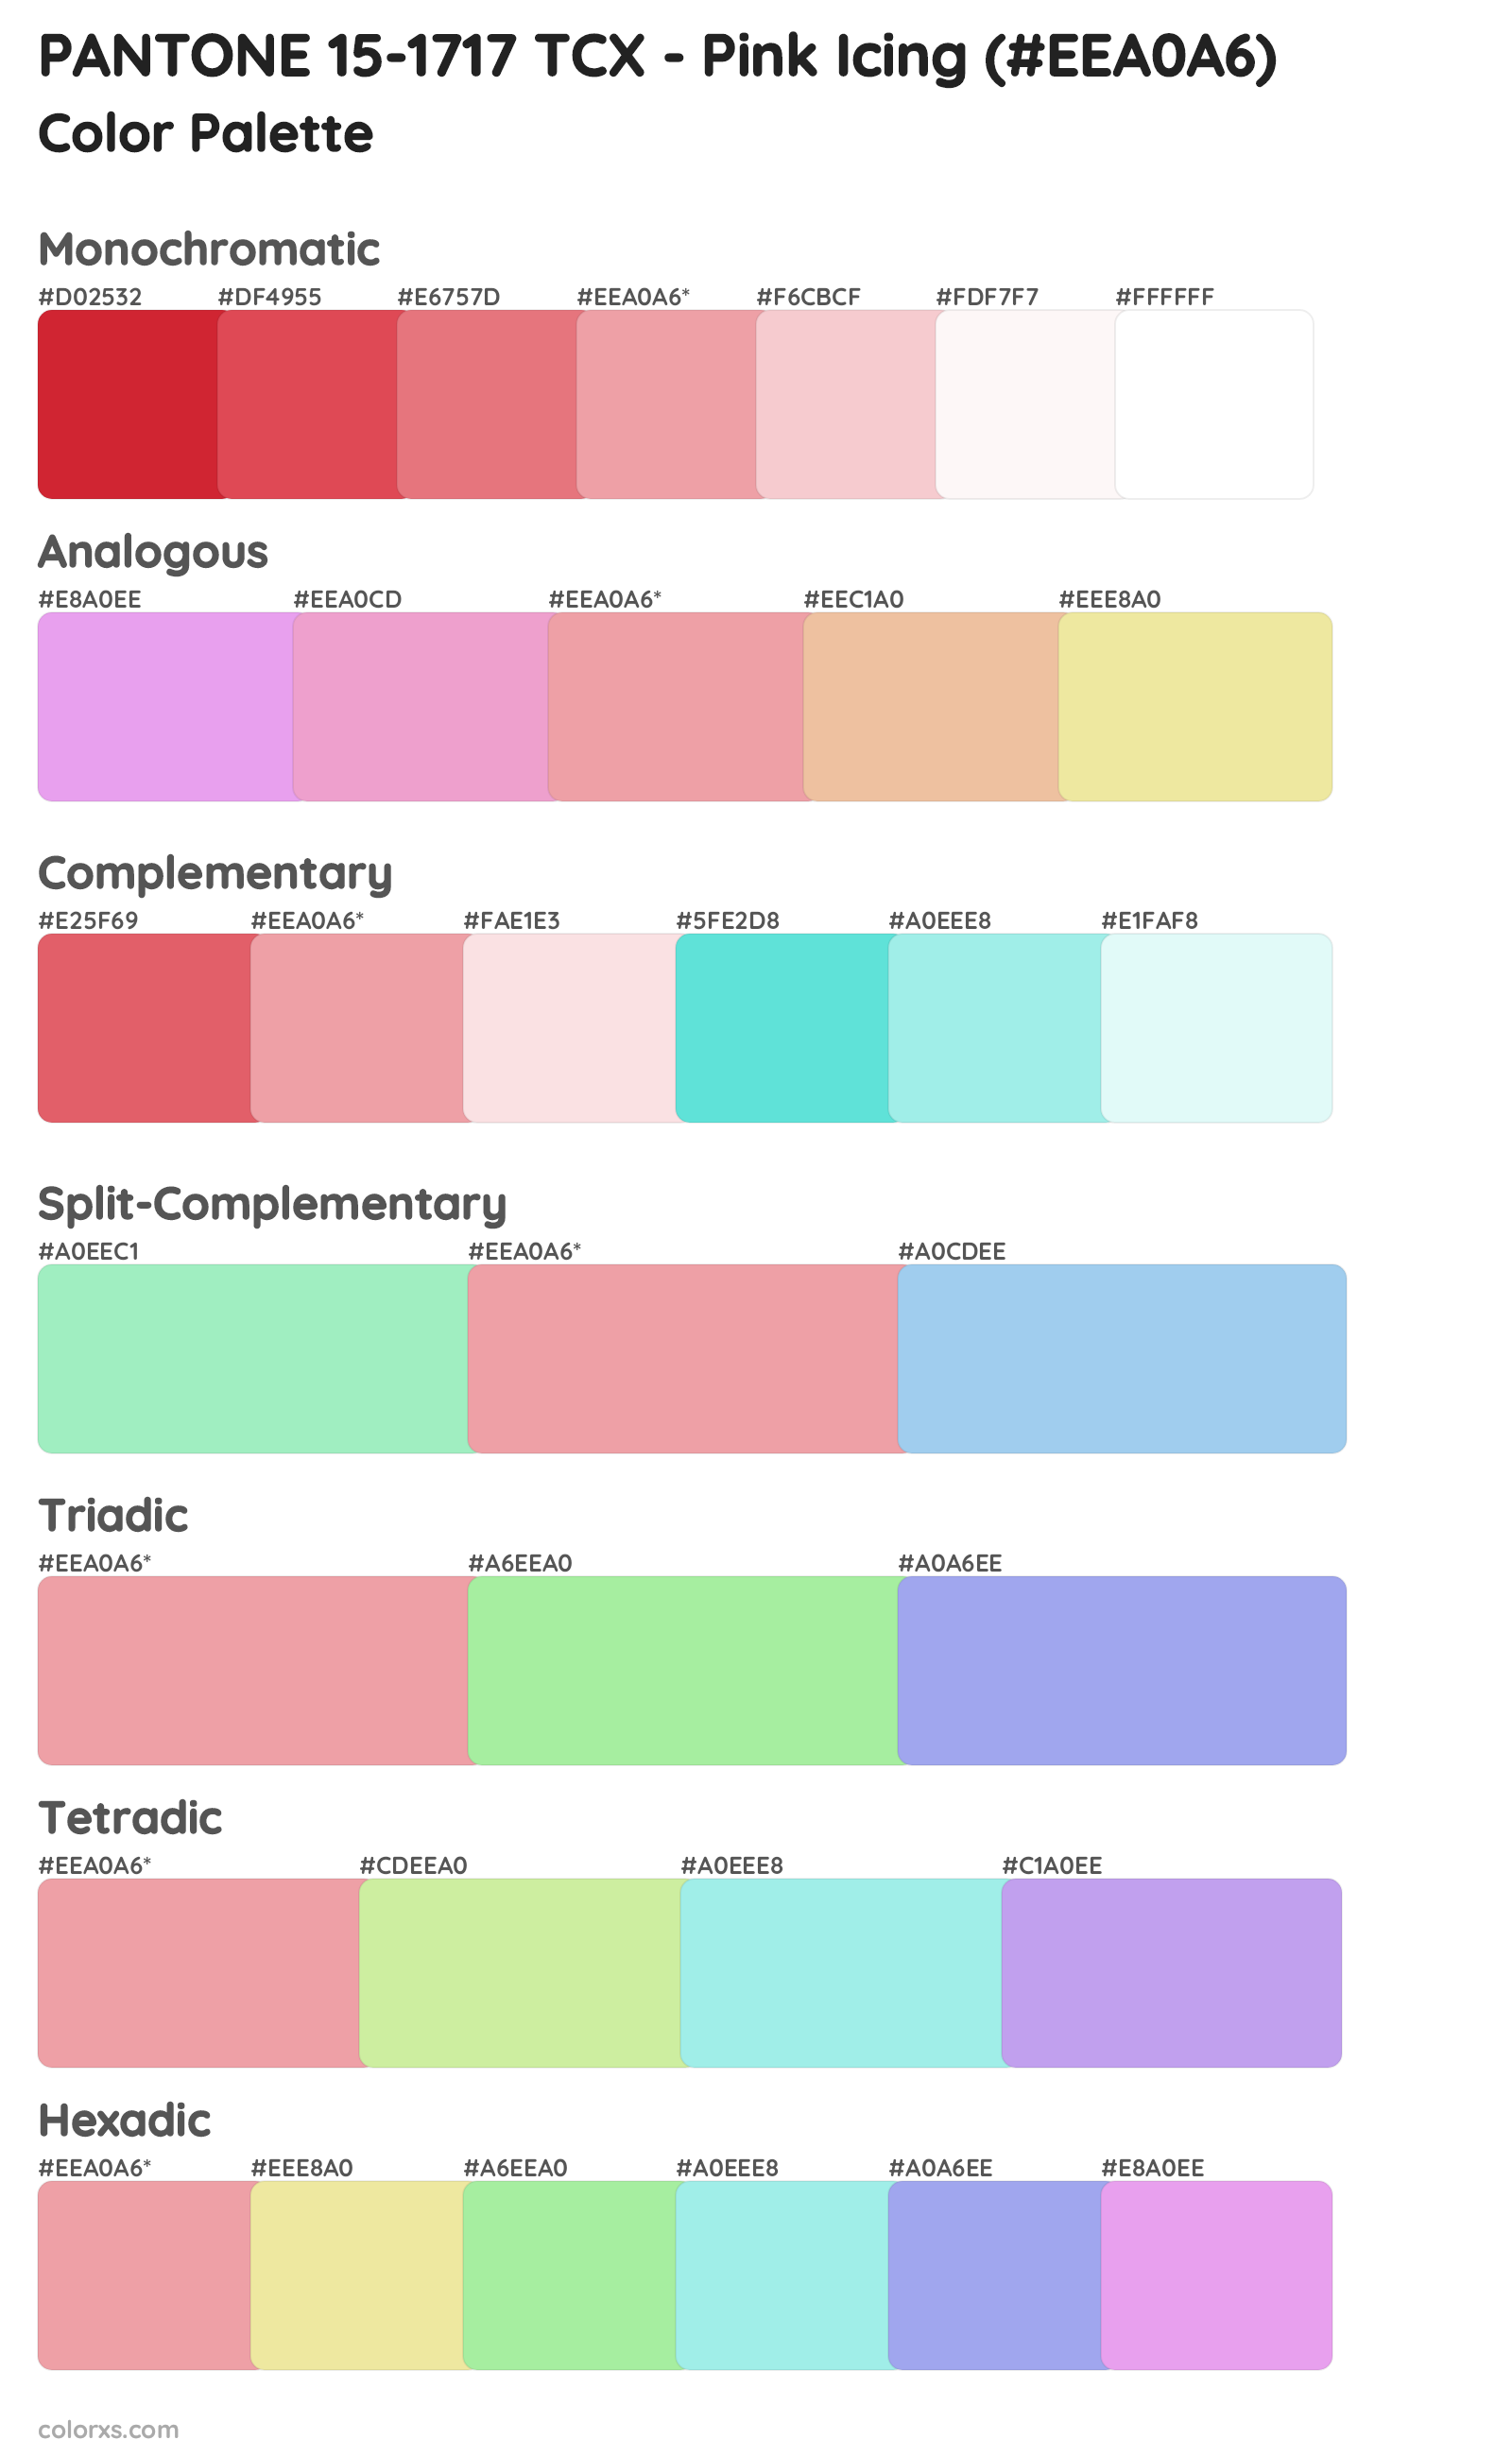 PANTONE 15-1717 TCX - Pink Icing Color Scheme Palettes